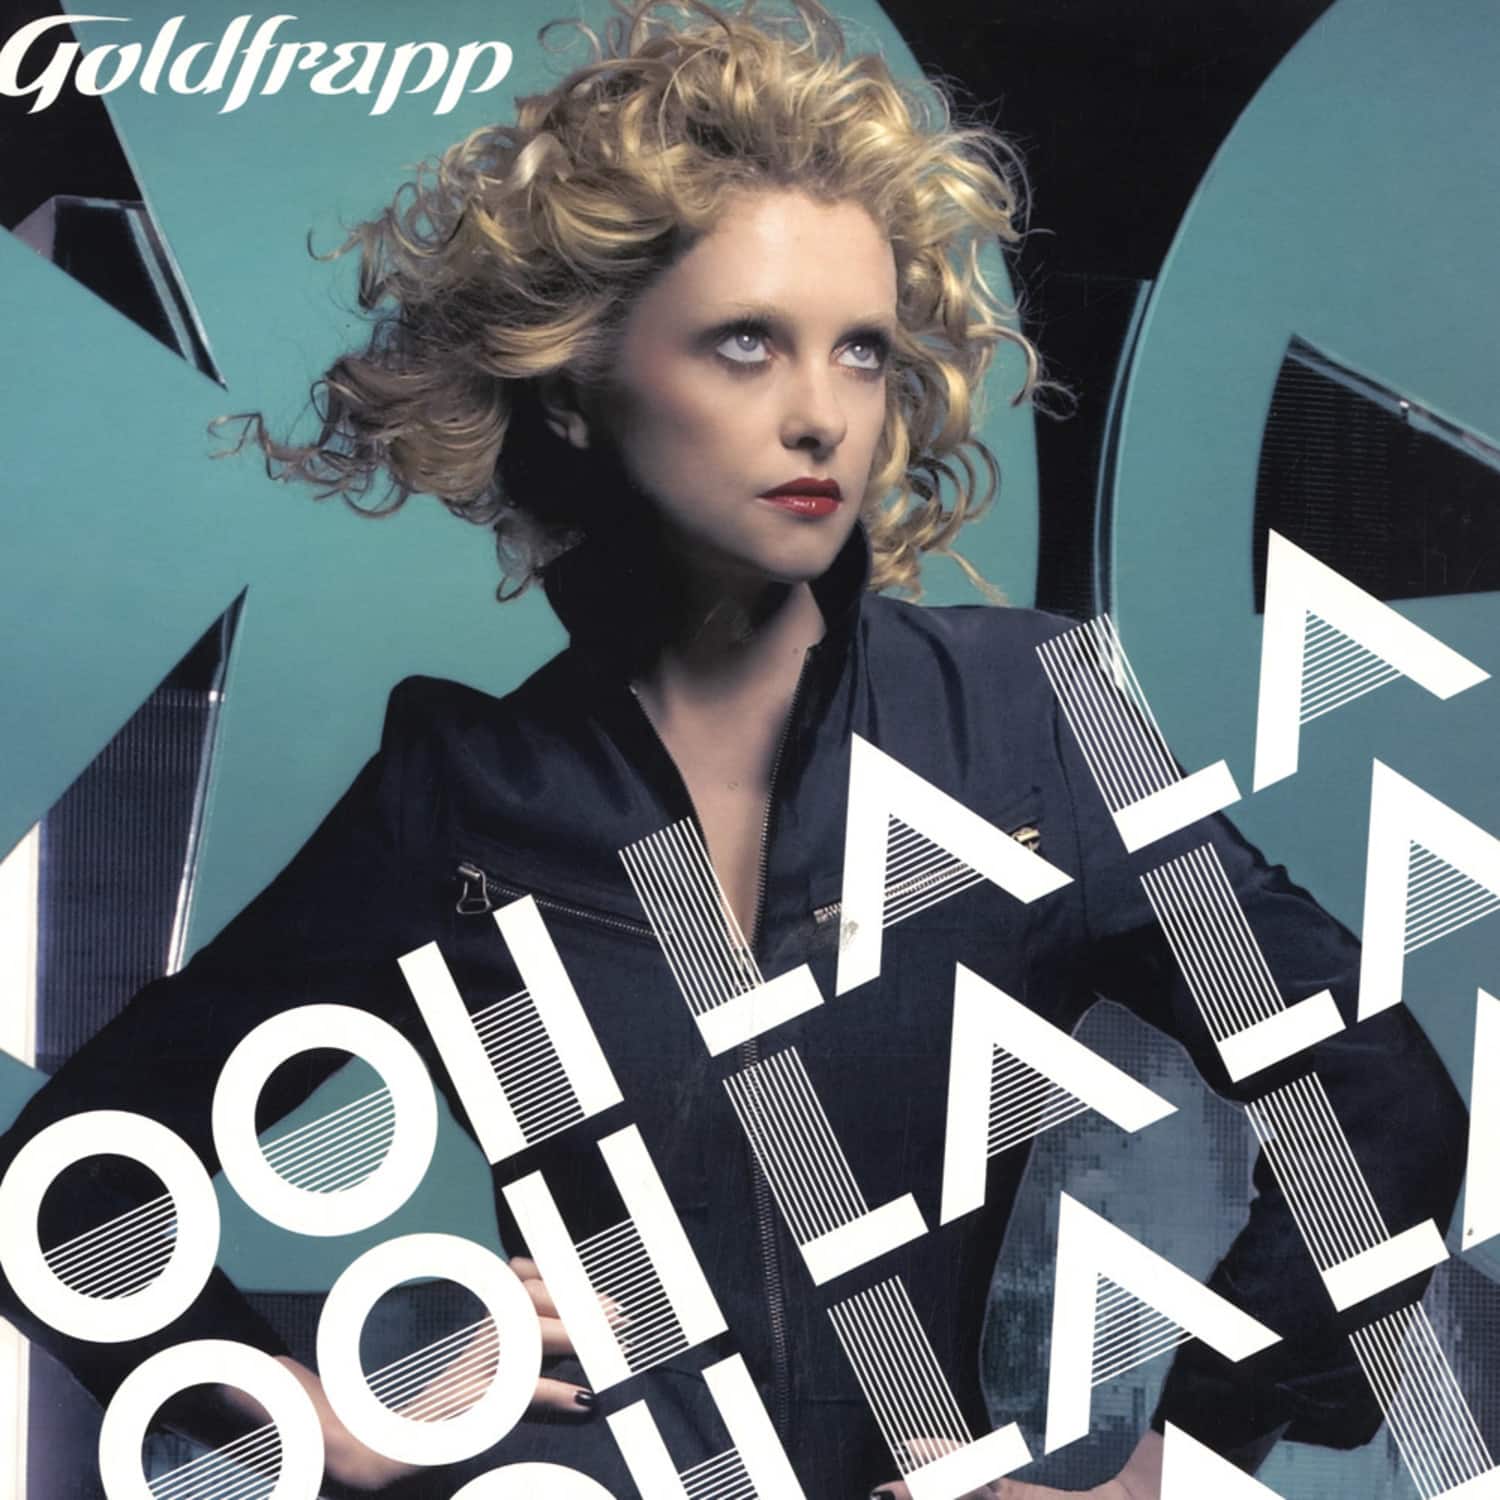 Goldfrapp - OHH LA LA-PART 1